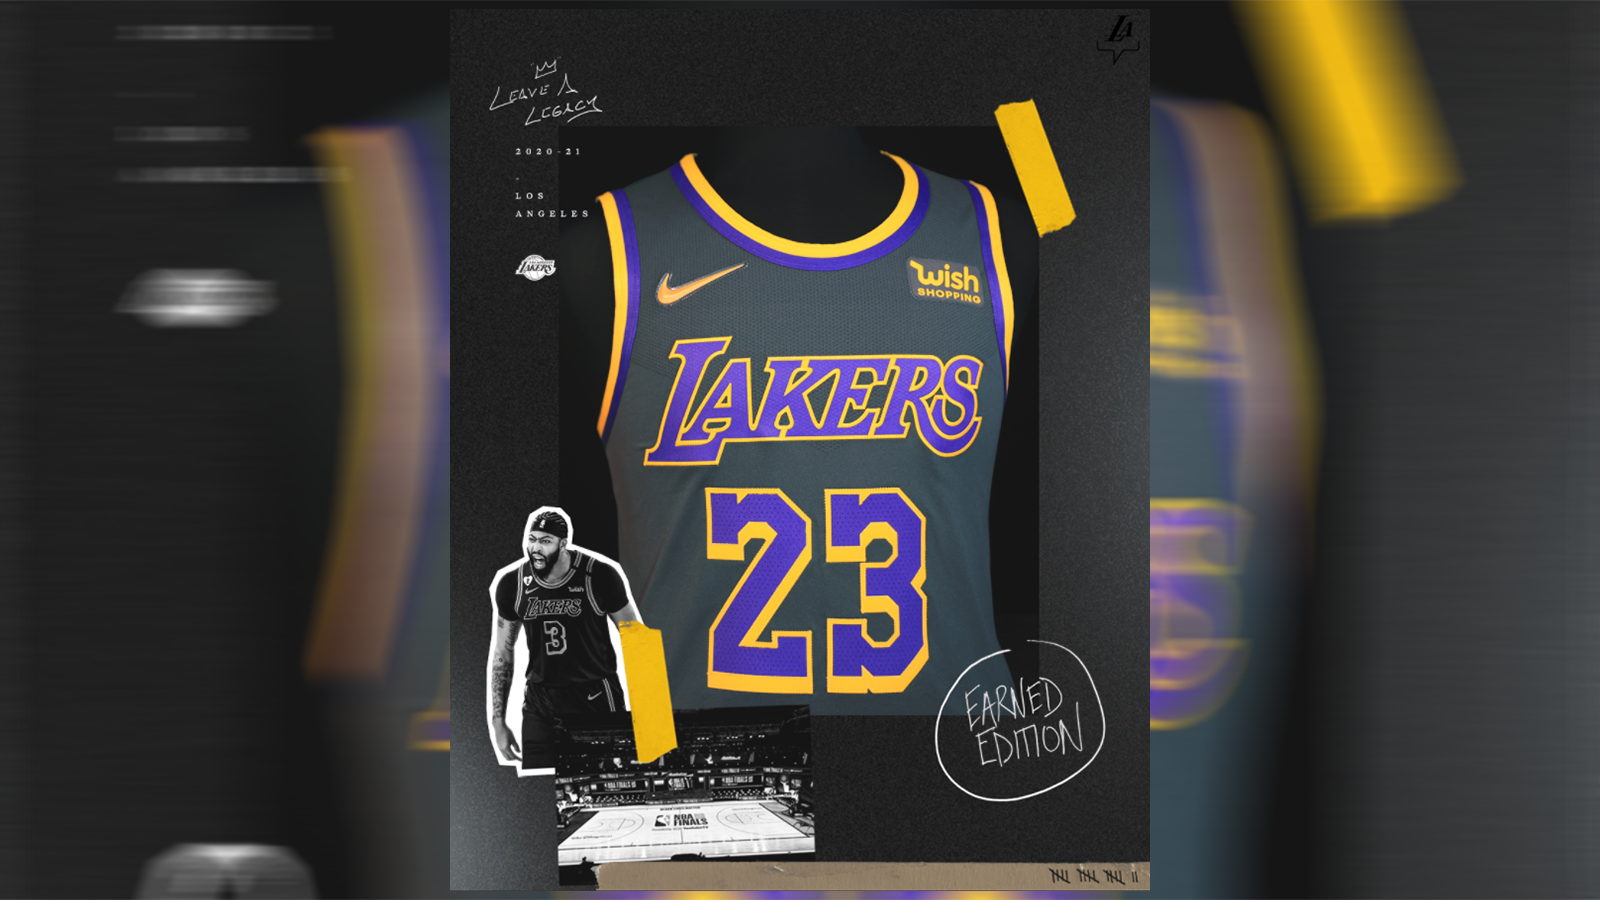 
                <strong>Los Angeles Lakers</strong><br>
                Die Lakers erinnern an die Mamba Edition aus der letzten Saison, ergänzen allerdings das gewohnte Purple and Gold. Das Mamba Trikot verlieh LeBron James und Co. auf dem Weg zur Championship eine Extramotivation, vielleicht läuft es in dieser Saison wieder so.
              